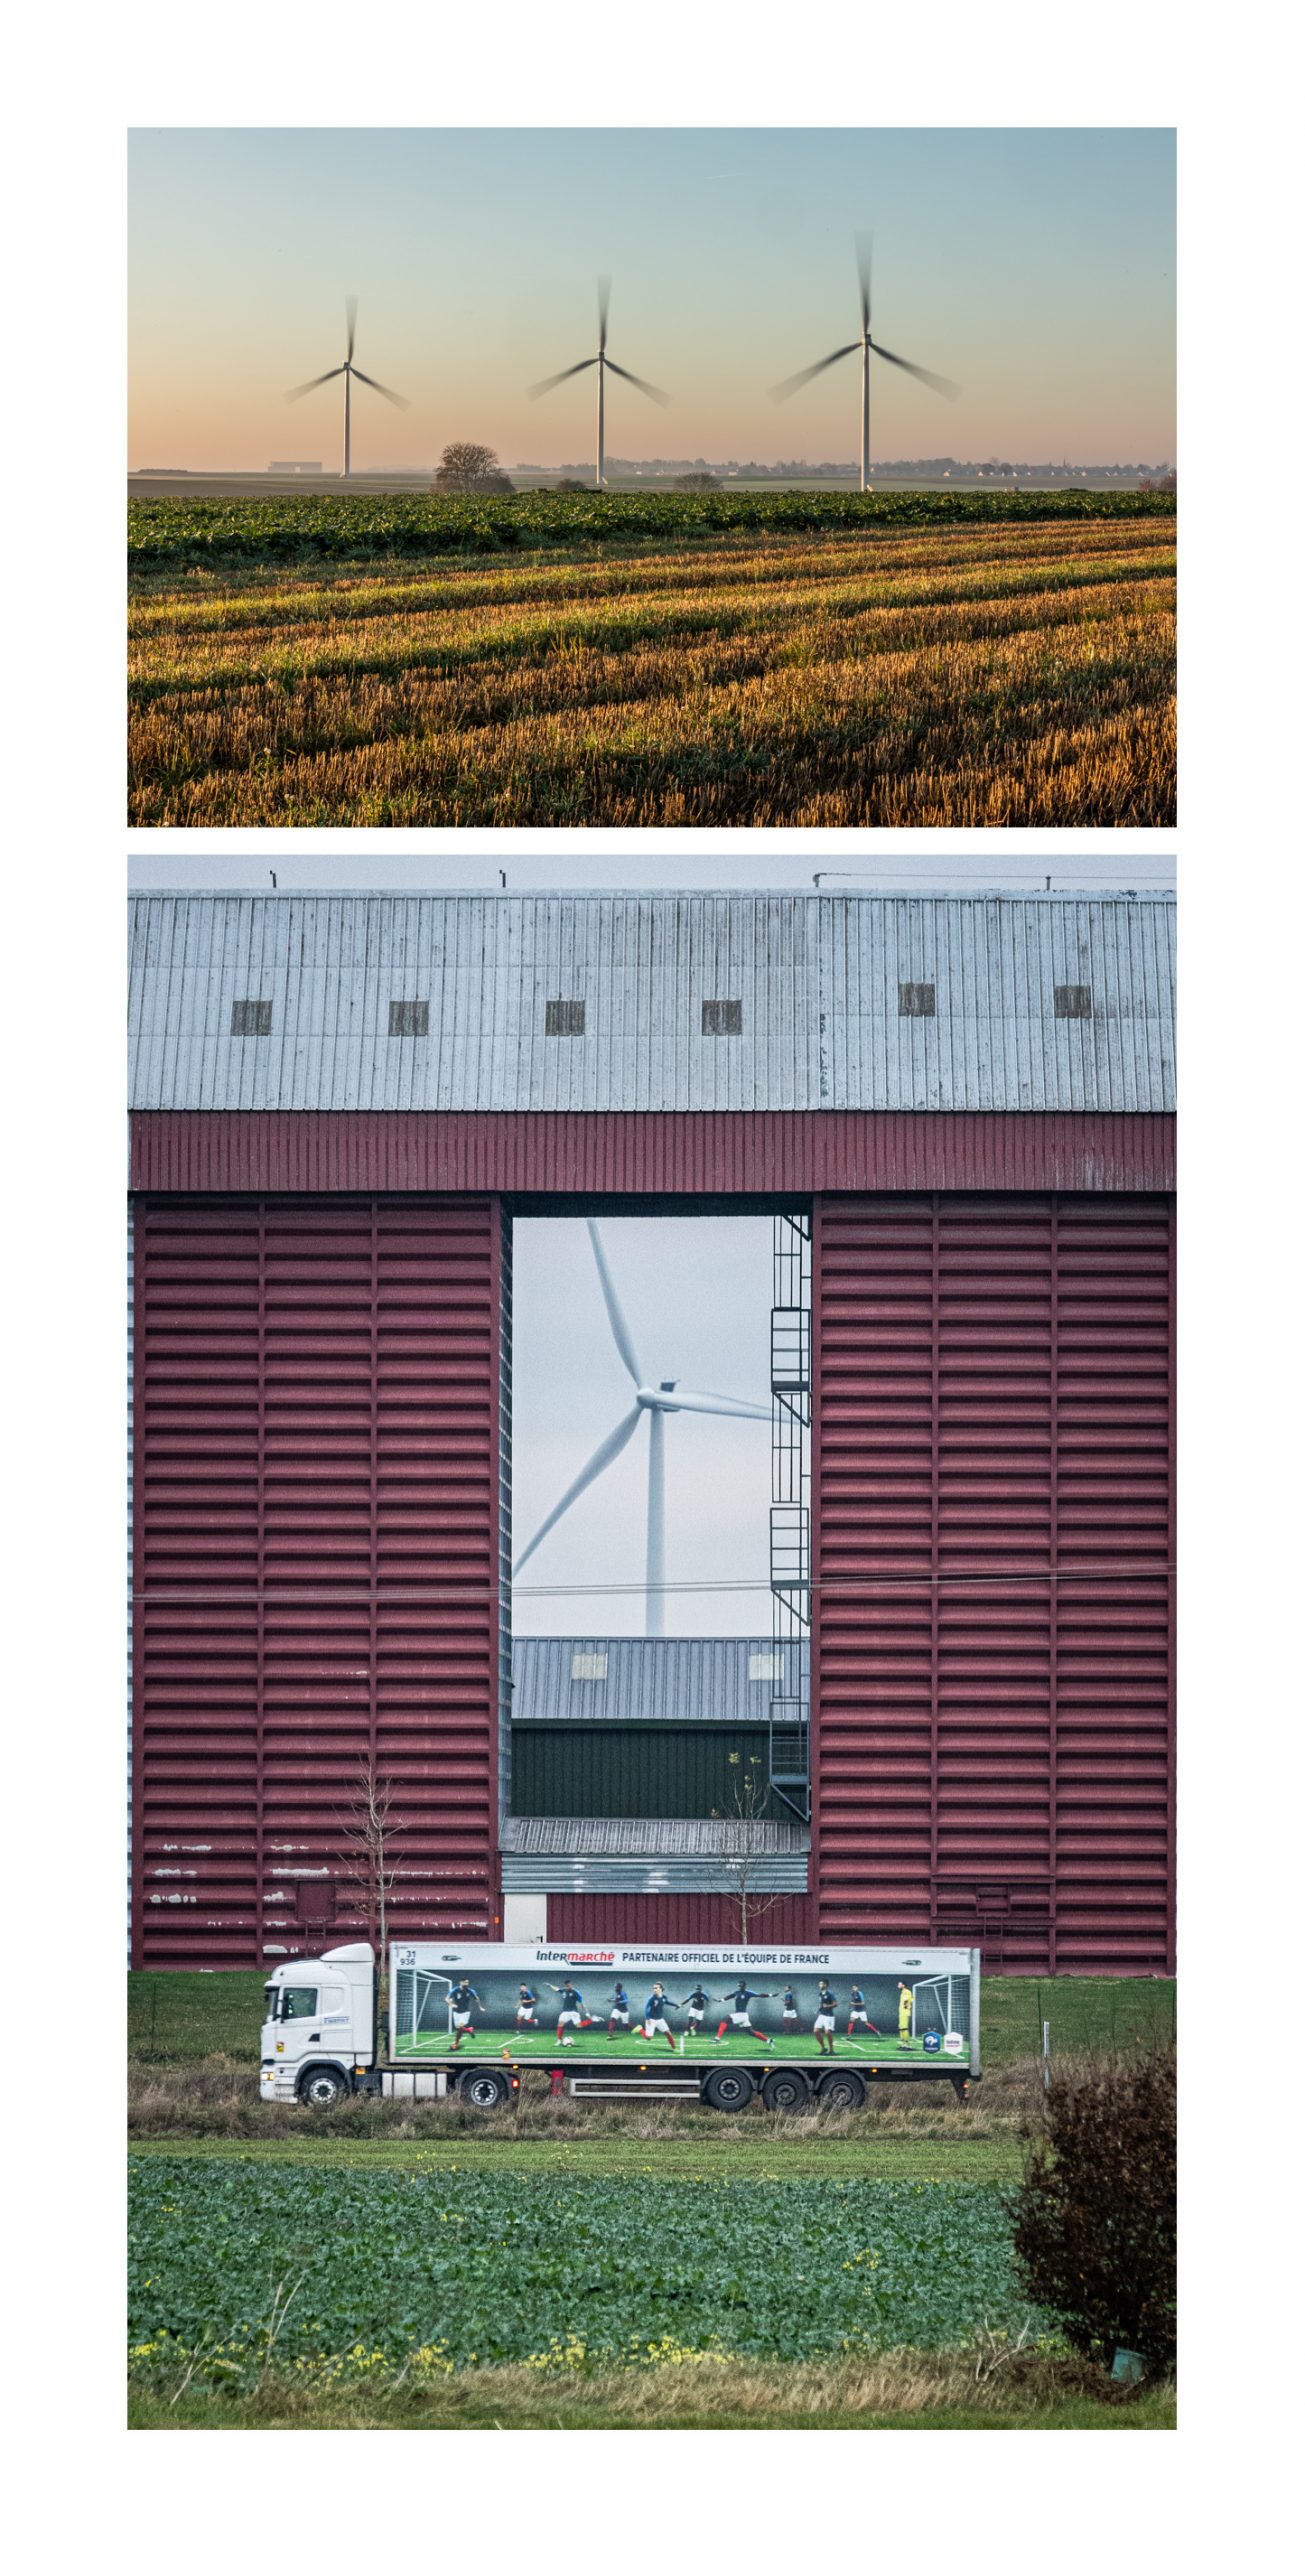 Mise en abîme paysagère - en haut : parc éolien et silos à l'horizon - en bas : les-dits silos encadrant l'aérogénérateur - à la frontière entre l'Oise et la Somme - novembre 2021